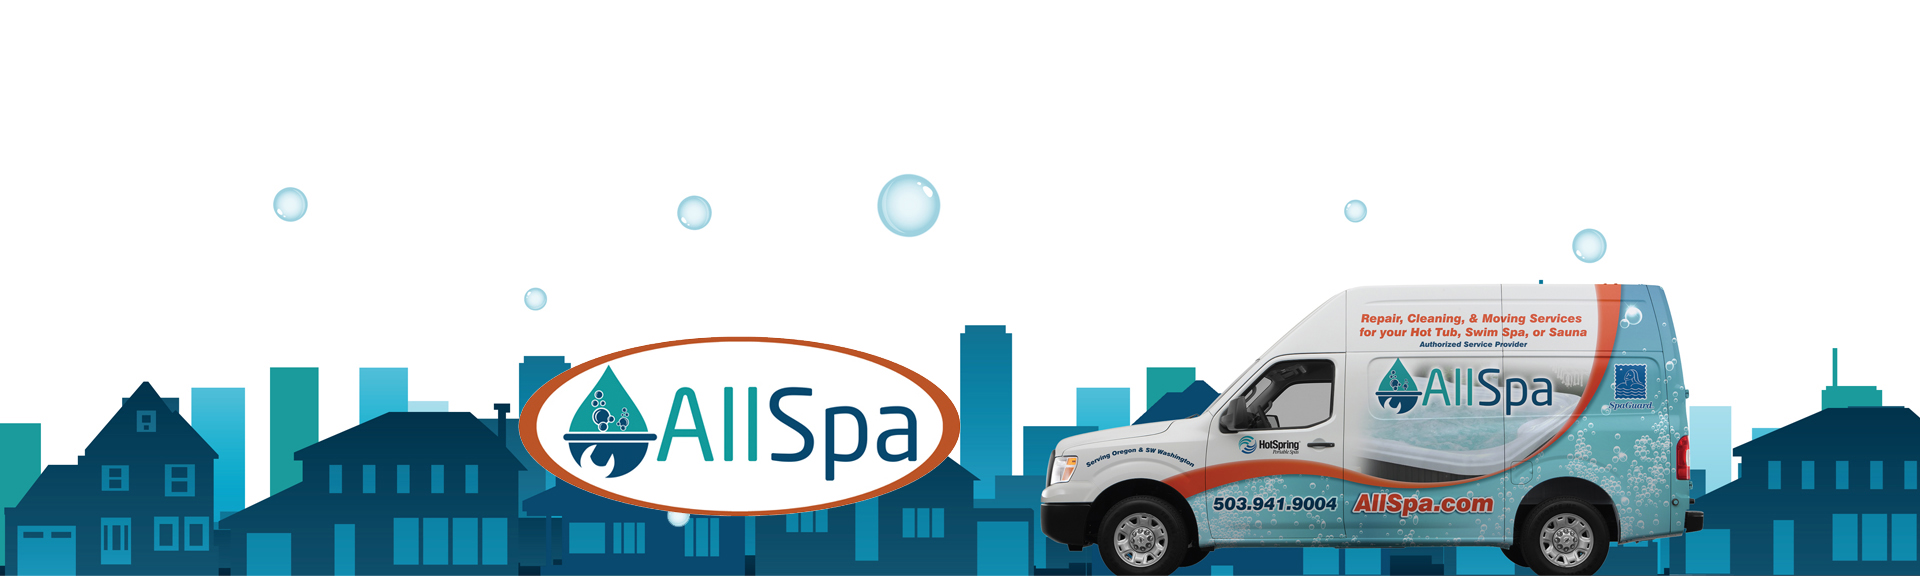 AllSpa Services 2